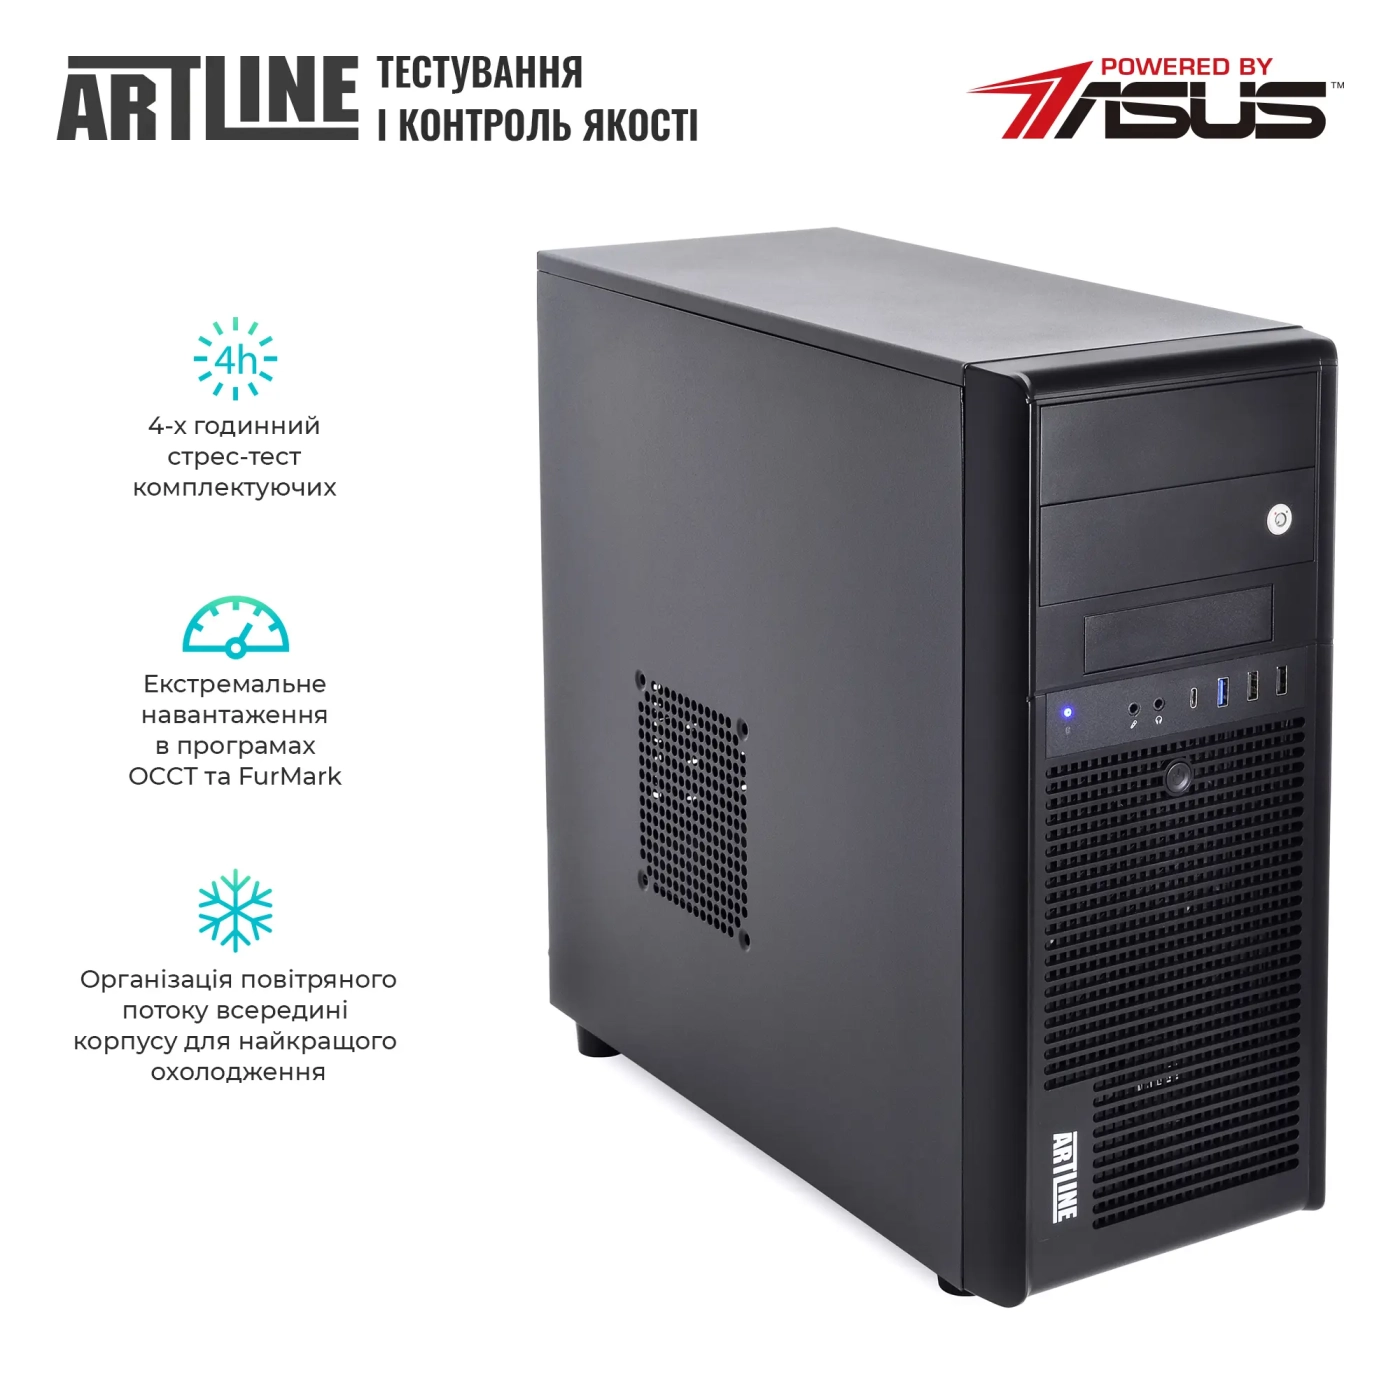 Купить Сервер ARTLINE Business T35 (T35v39) - фото 7